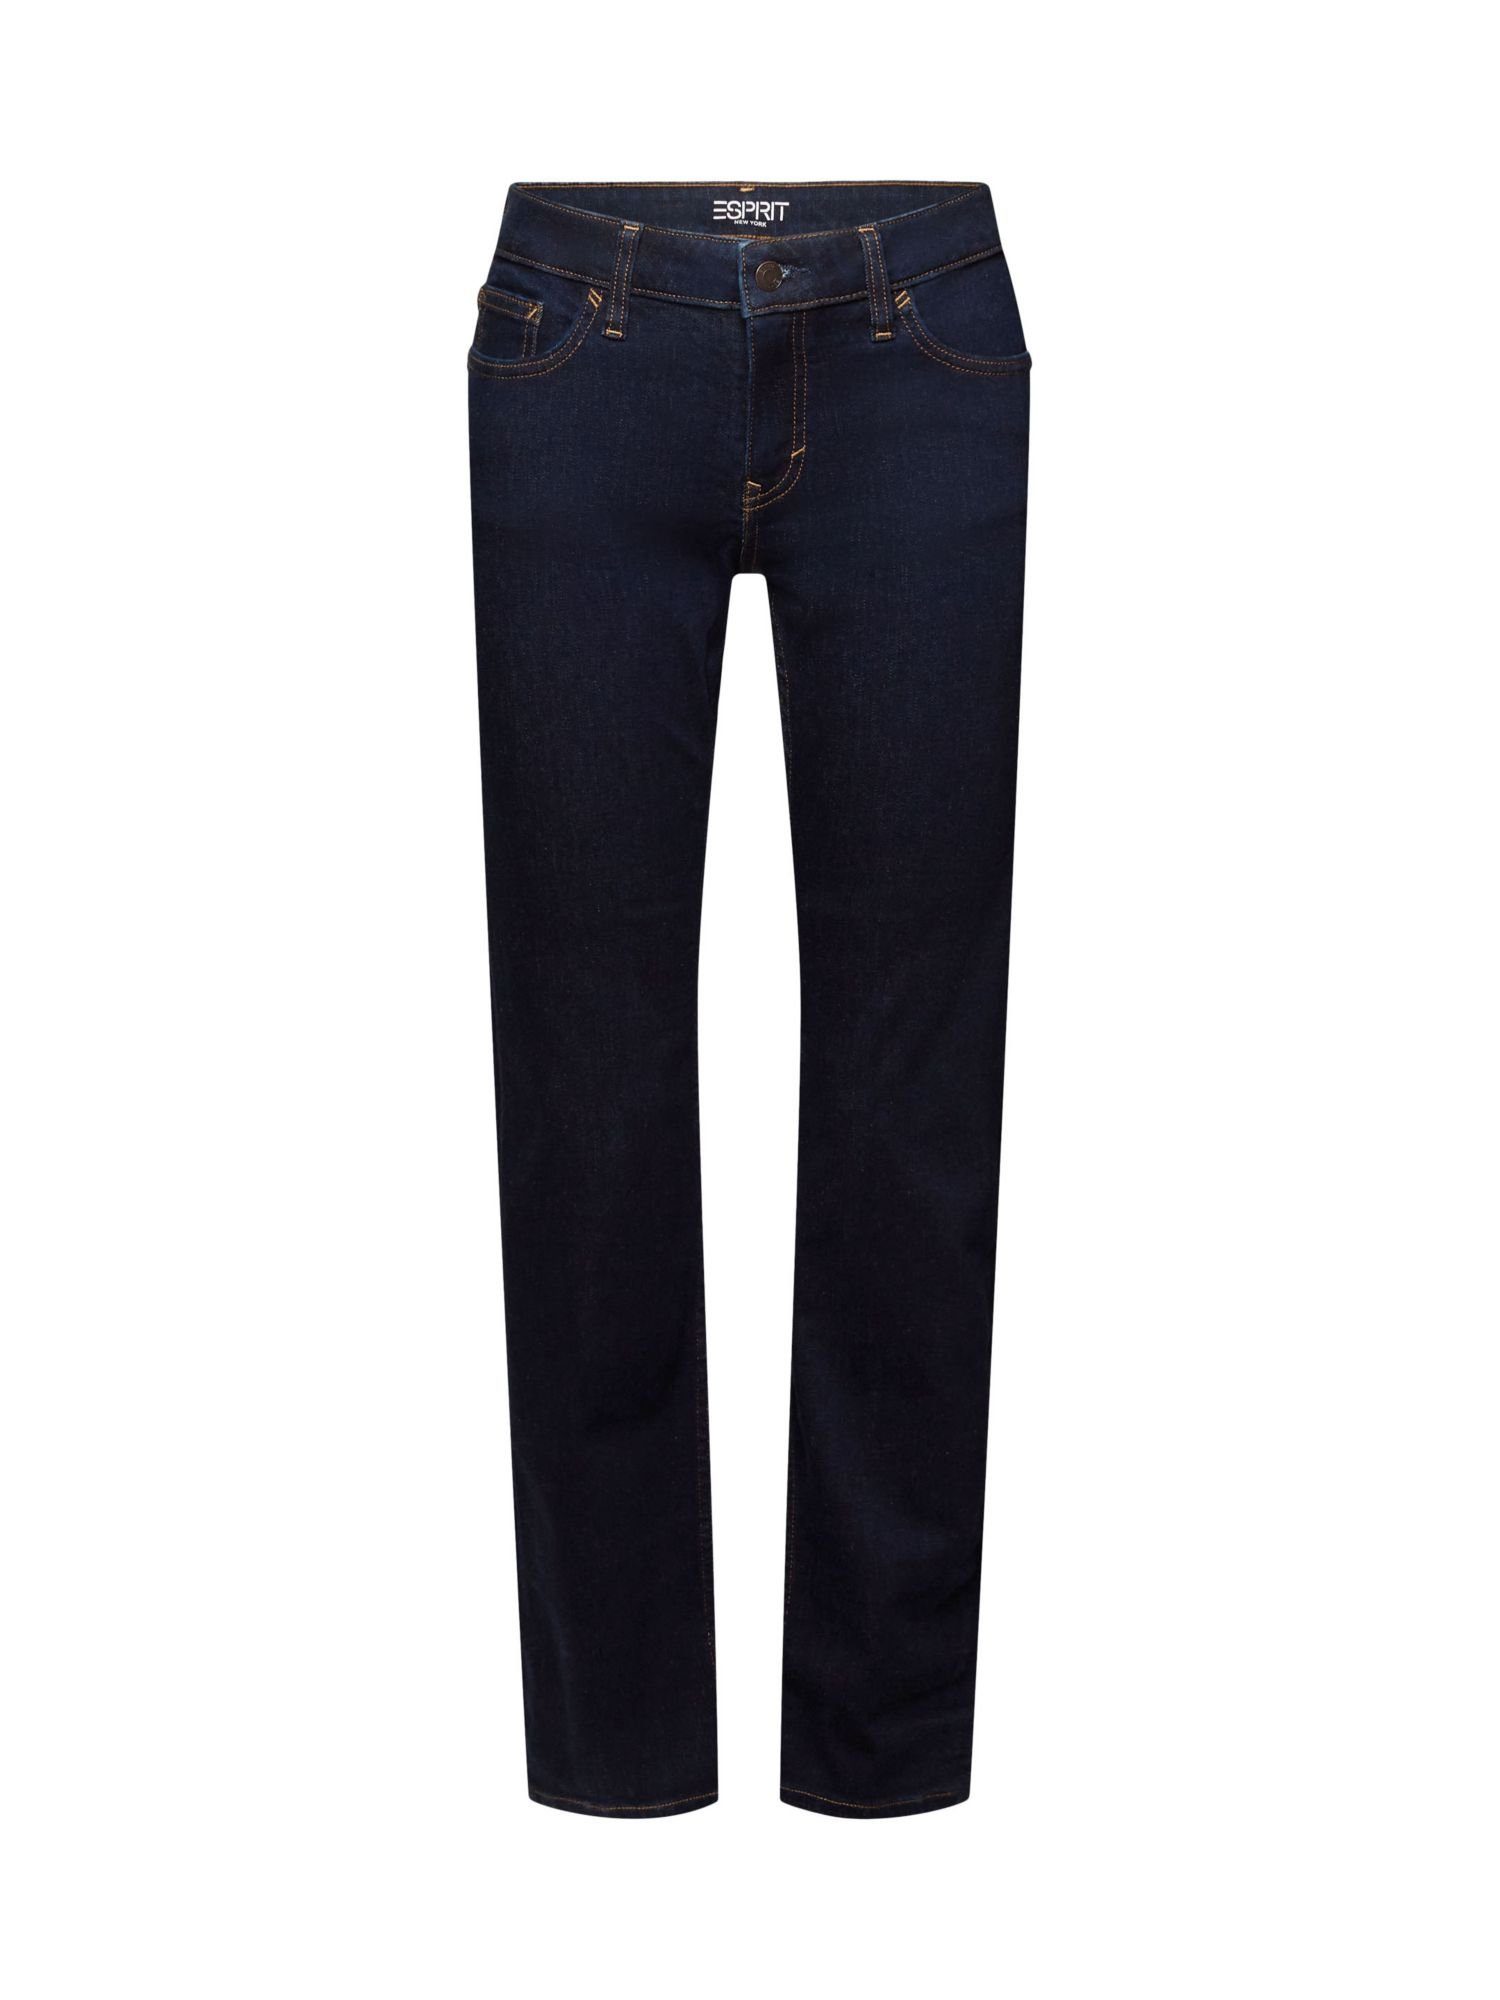 Esprit Straight-Jeans Stretchjeans mit geradem Bein, Baumwollmix